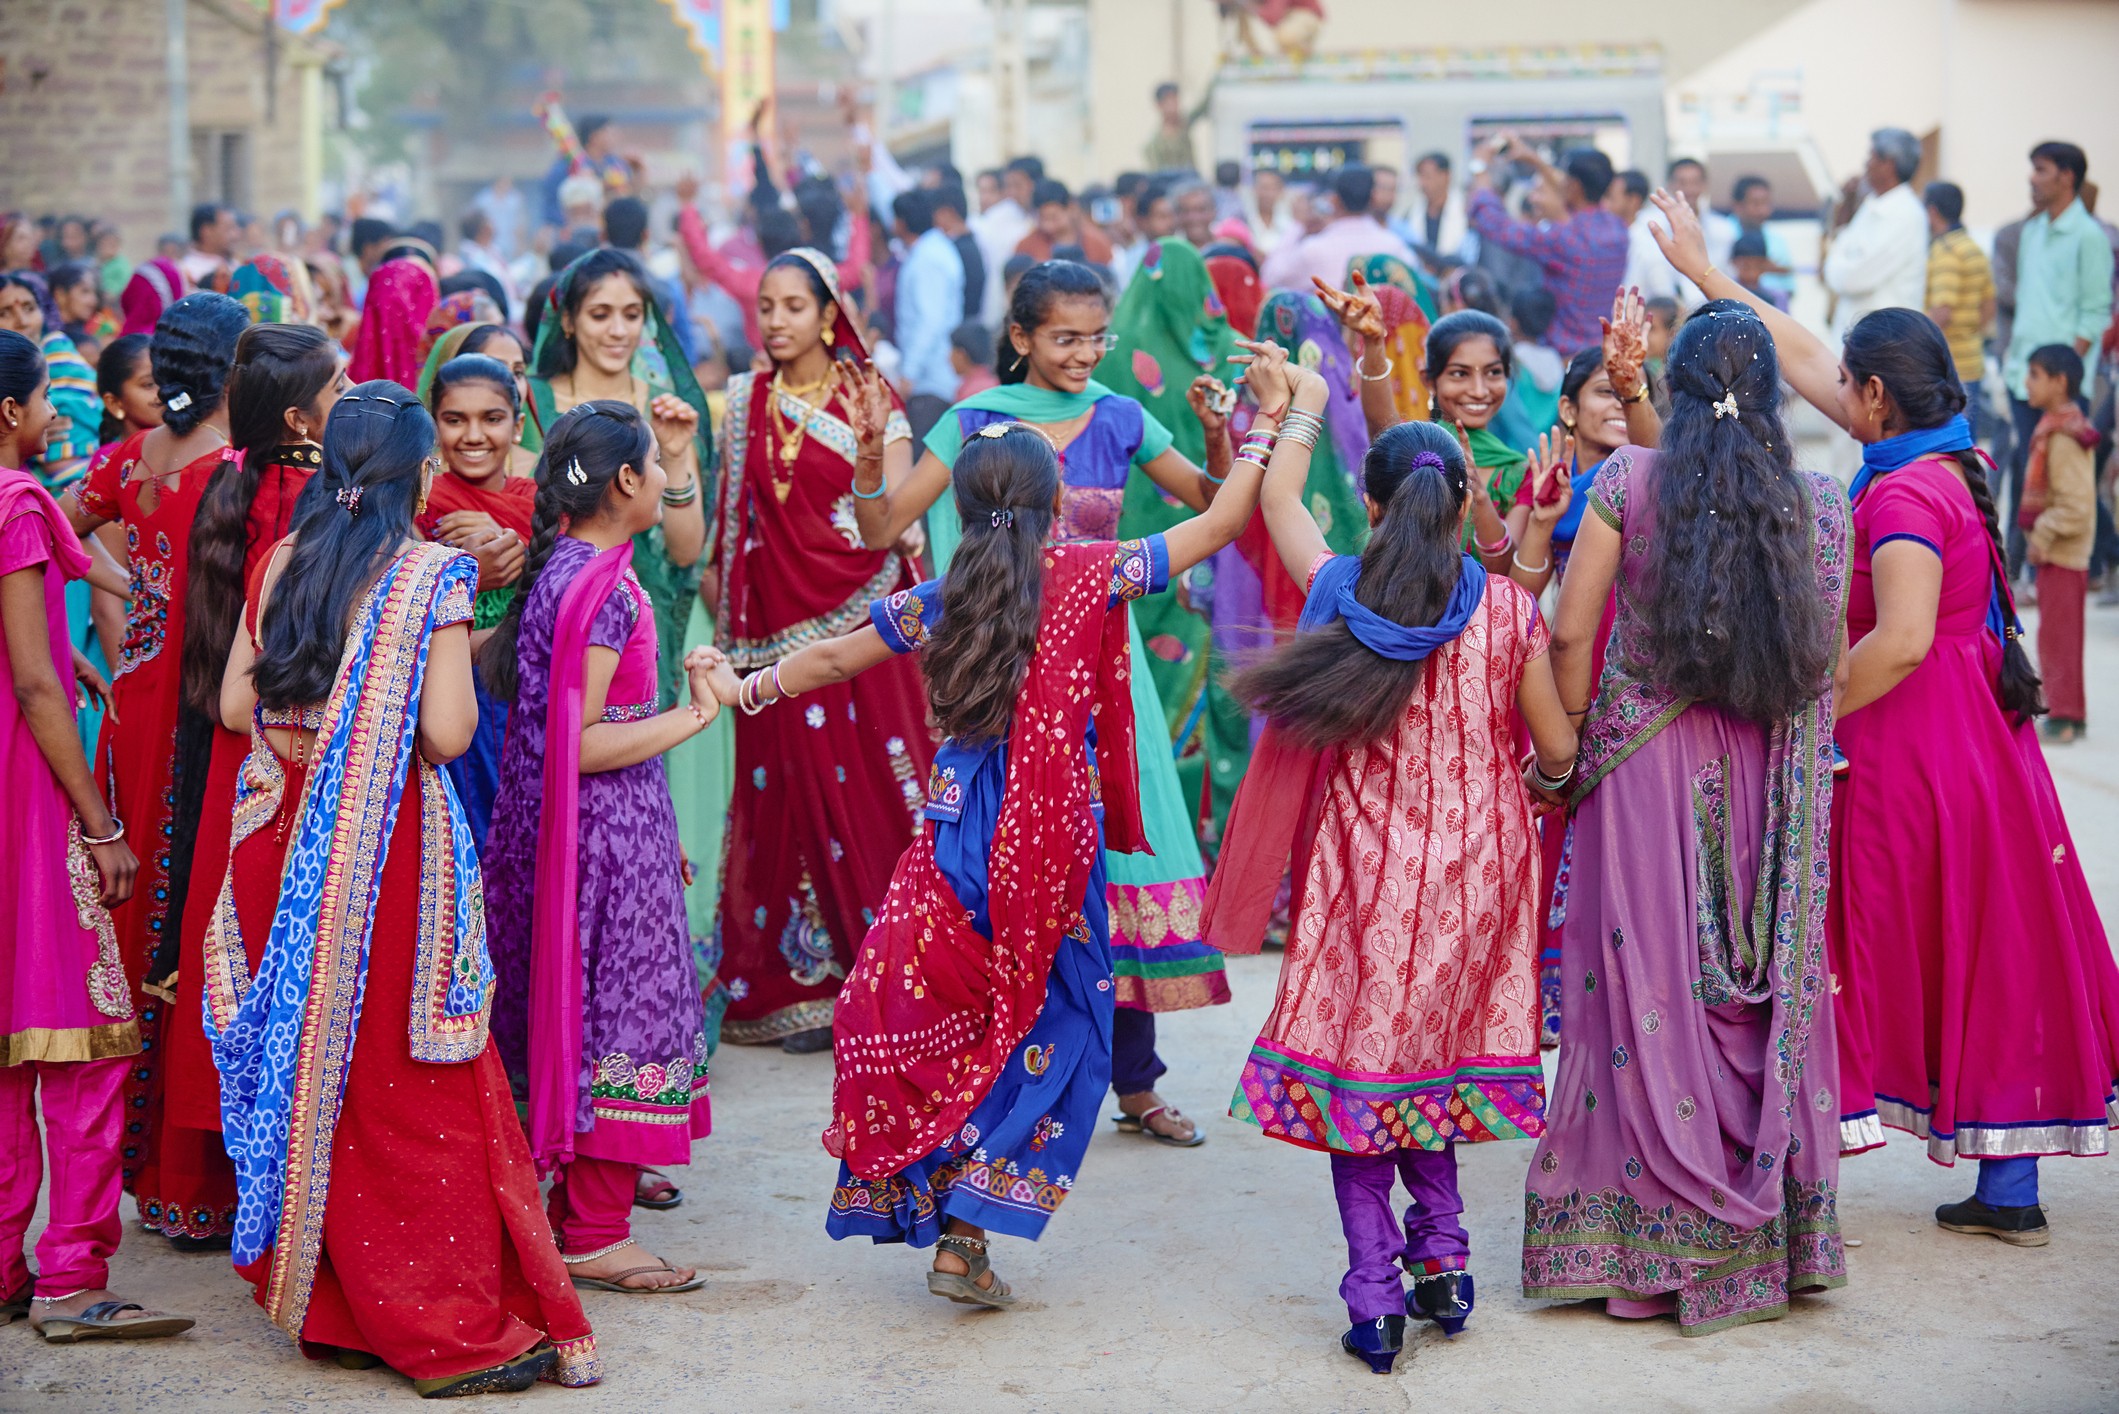 Mulheres dançam durante uma cerimônia de casamento tradicional indiana (Foto: Getty Images)